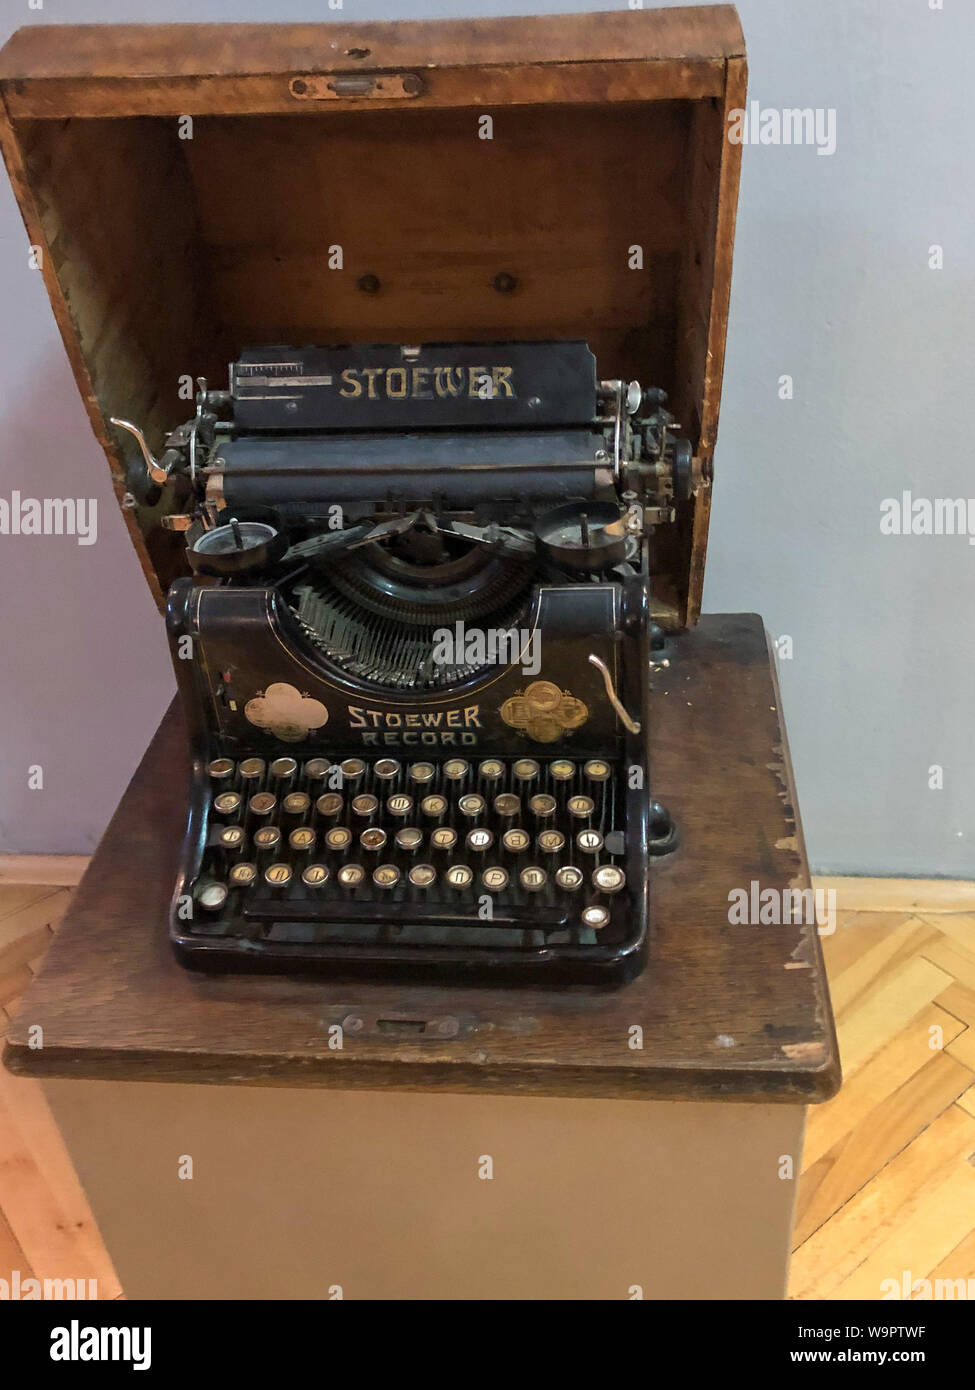 BITOLA, MAZEDONIEN - 12. MAI 2019: Stoewer Schreibmaschine. Sehr alte Schreibmaschine in guter Form Stockfoto